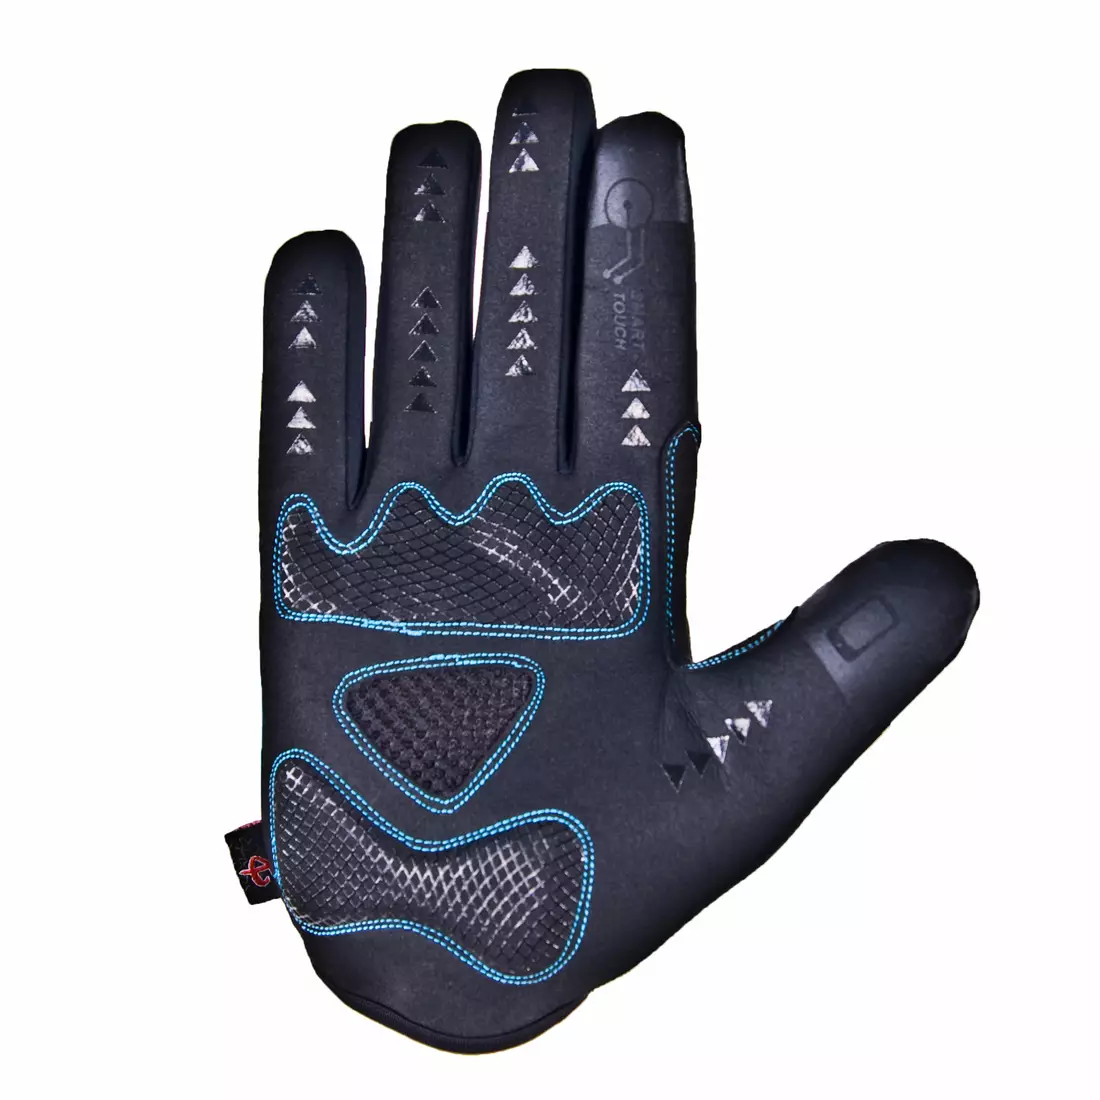 Zimní cyklistické rukavice DEKO ROST černomodré DKWG-0715-006A